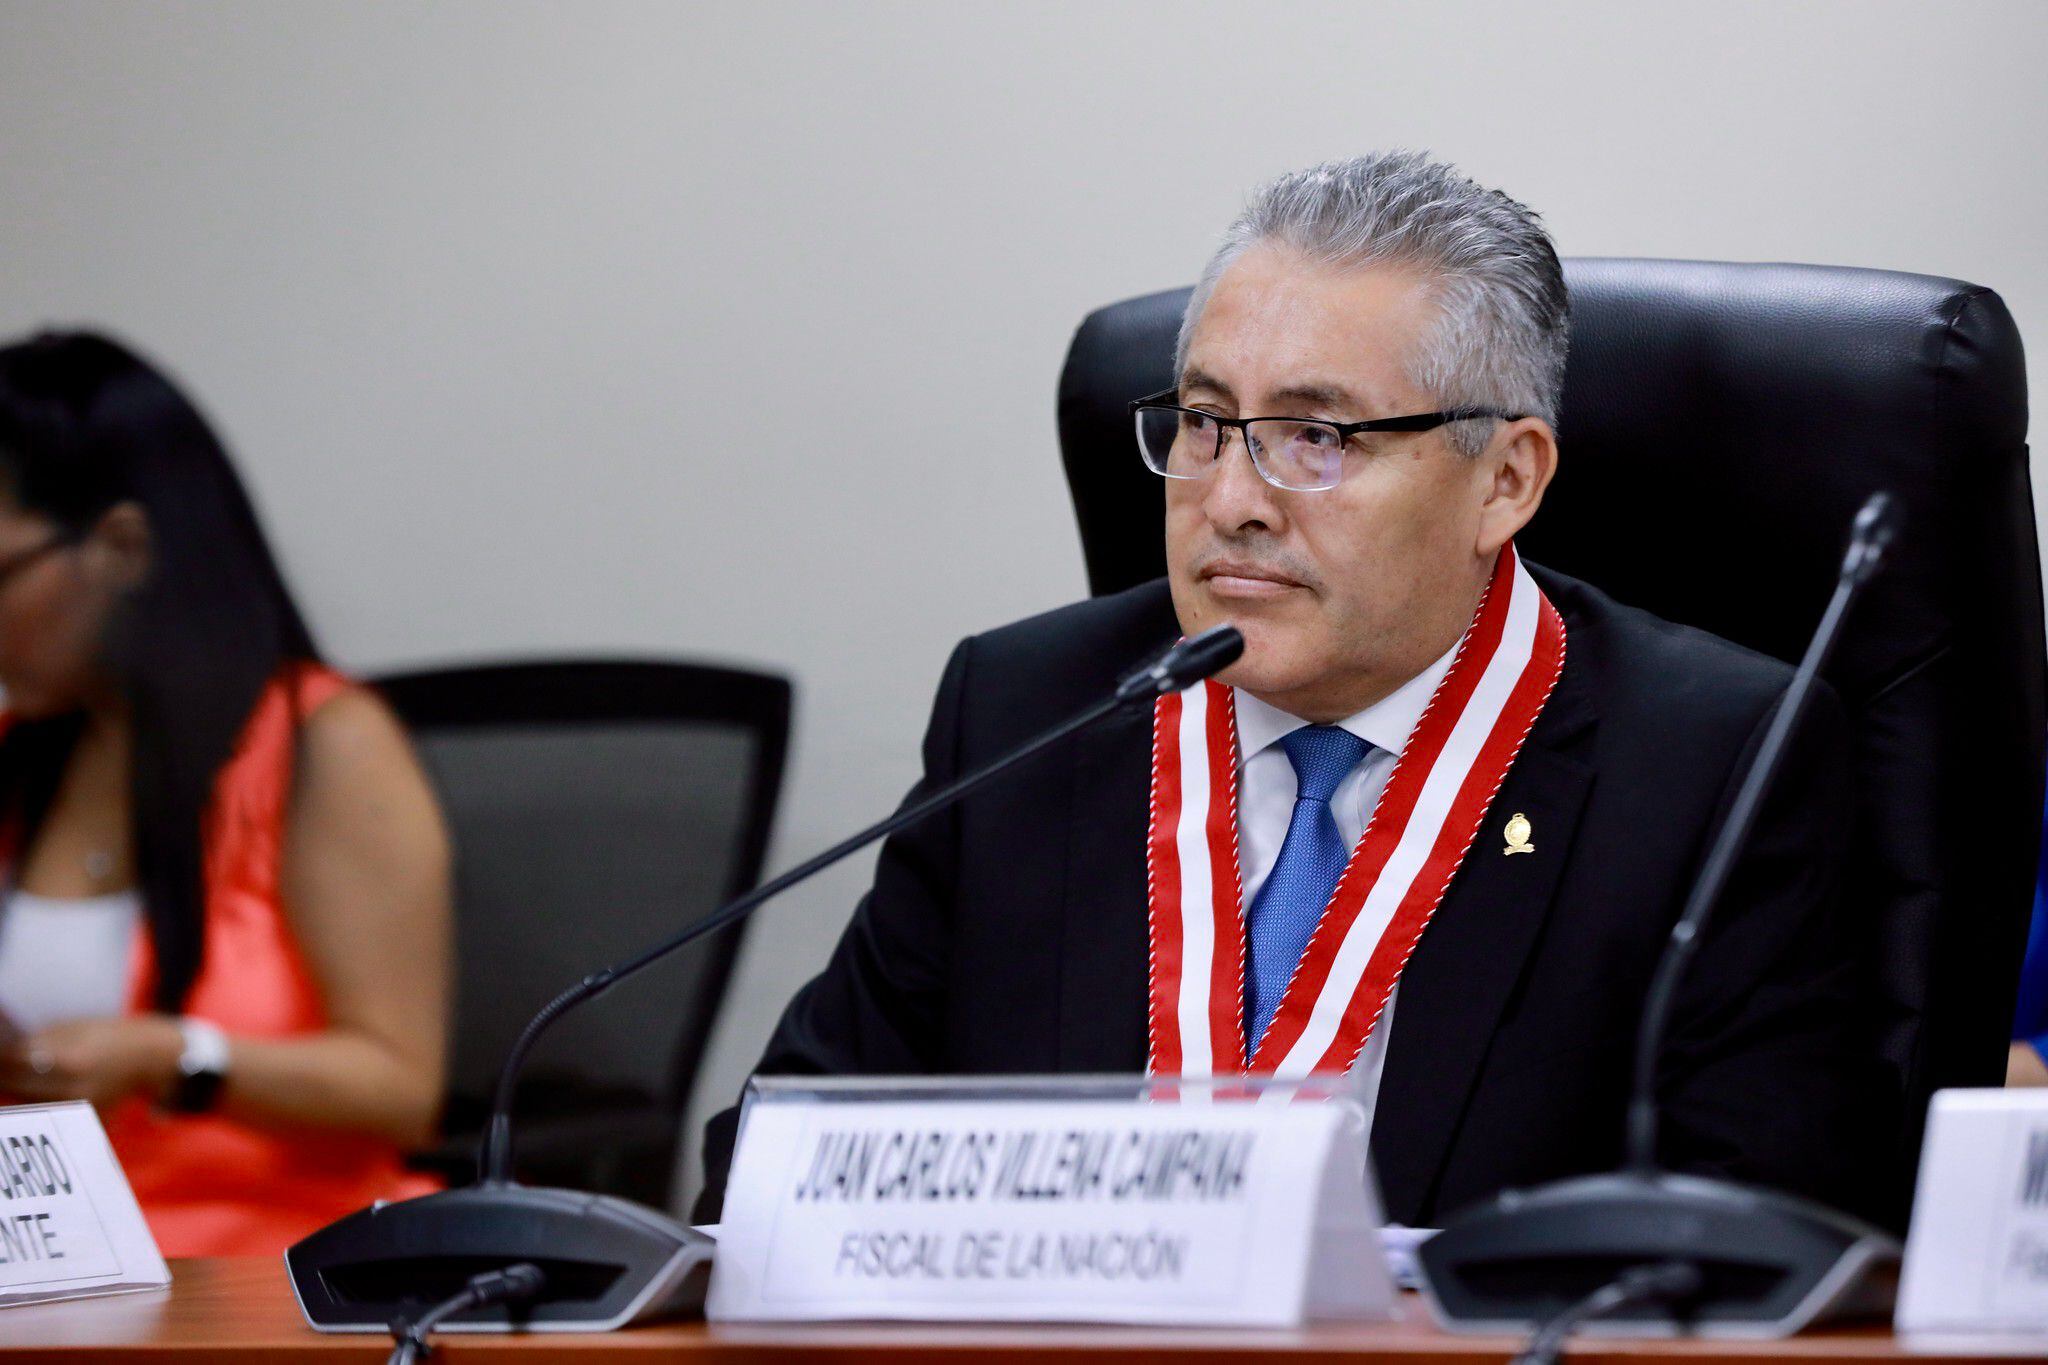 La confirmación de la incautación fue solicitada por el fiscal de la Nación, Juan Carlos Villena, quien dirige la investigación a la presidenta. Foto: Congreso